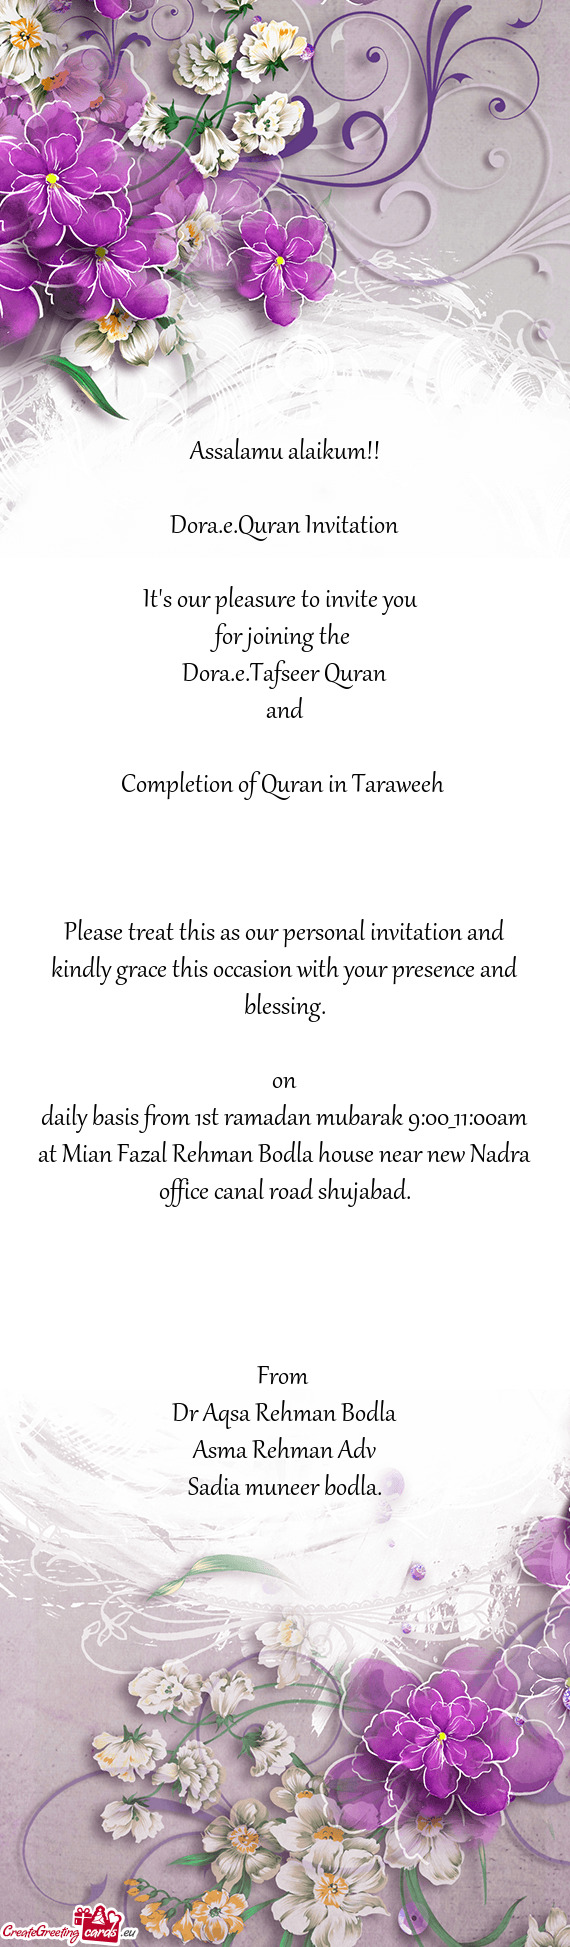 Dora.e.Quran Invitation